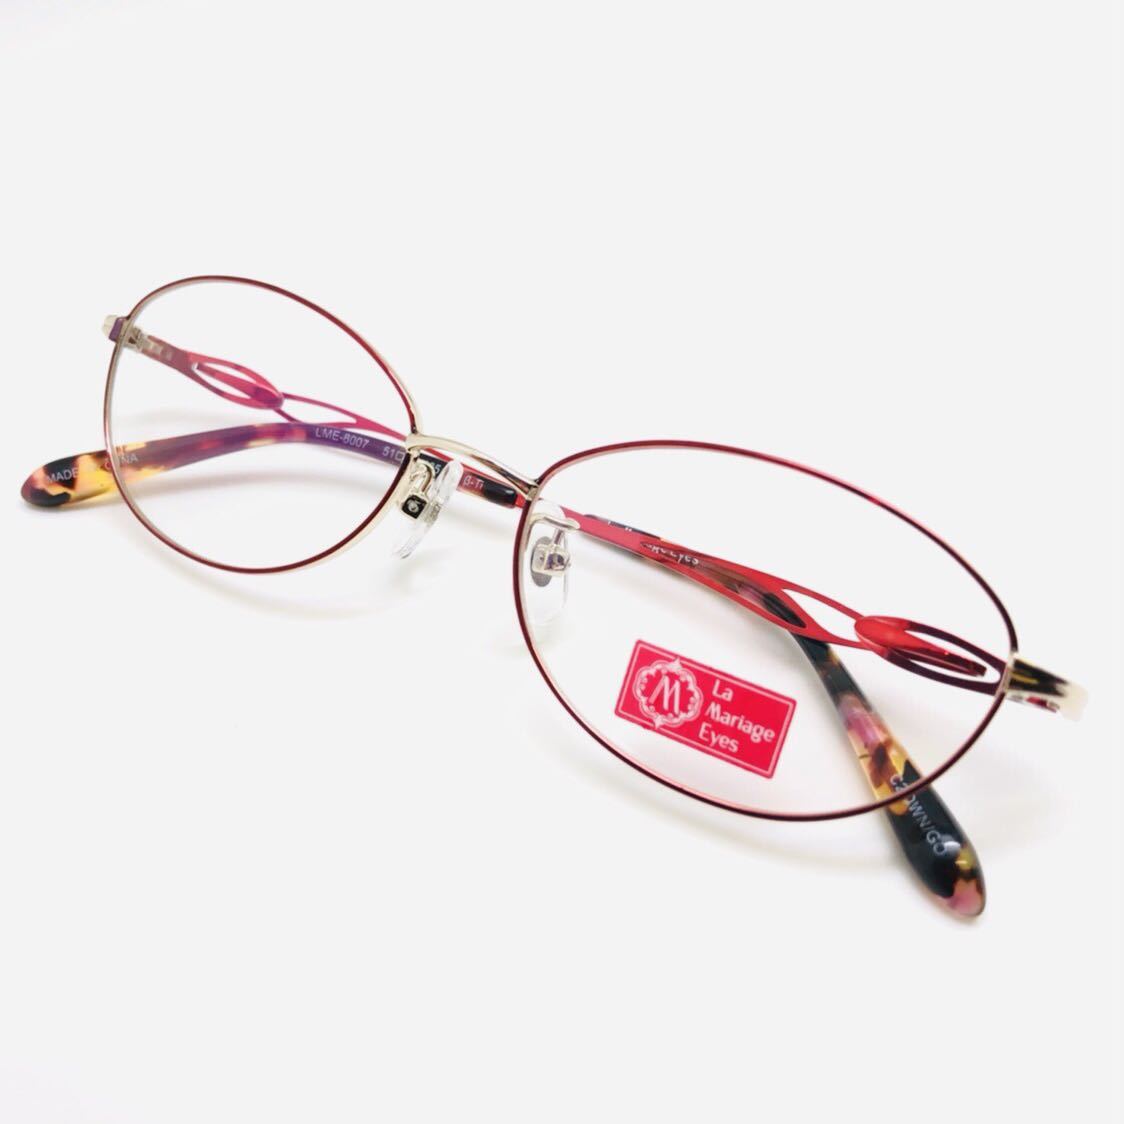 新品 La Mariage Eeys 眼鏡 メガネ 綺麗 上品 オシャレ かわいい 赤色系 レッド系_画像1